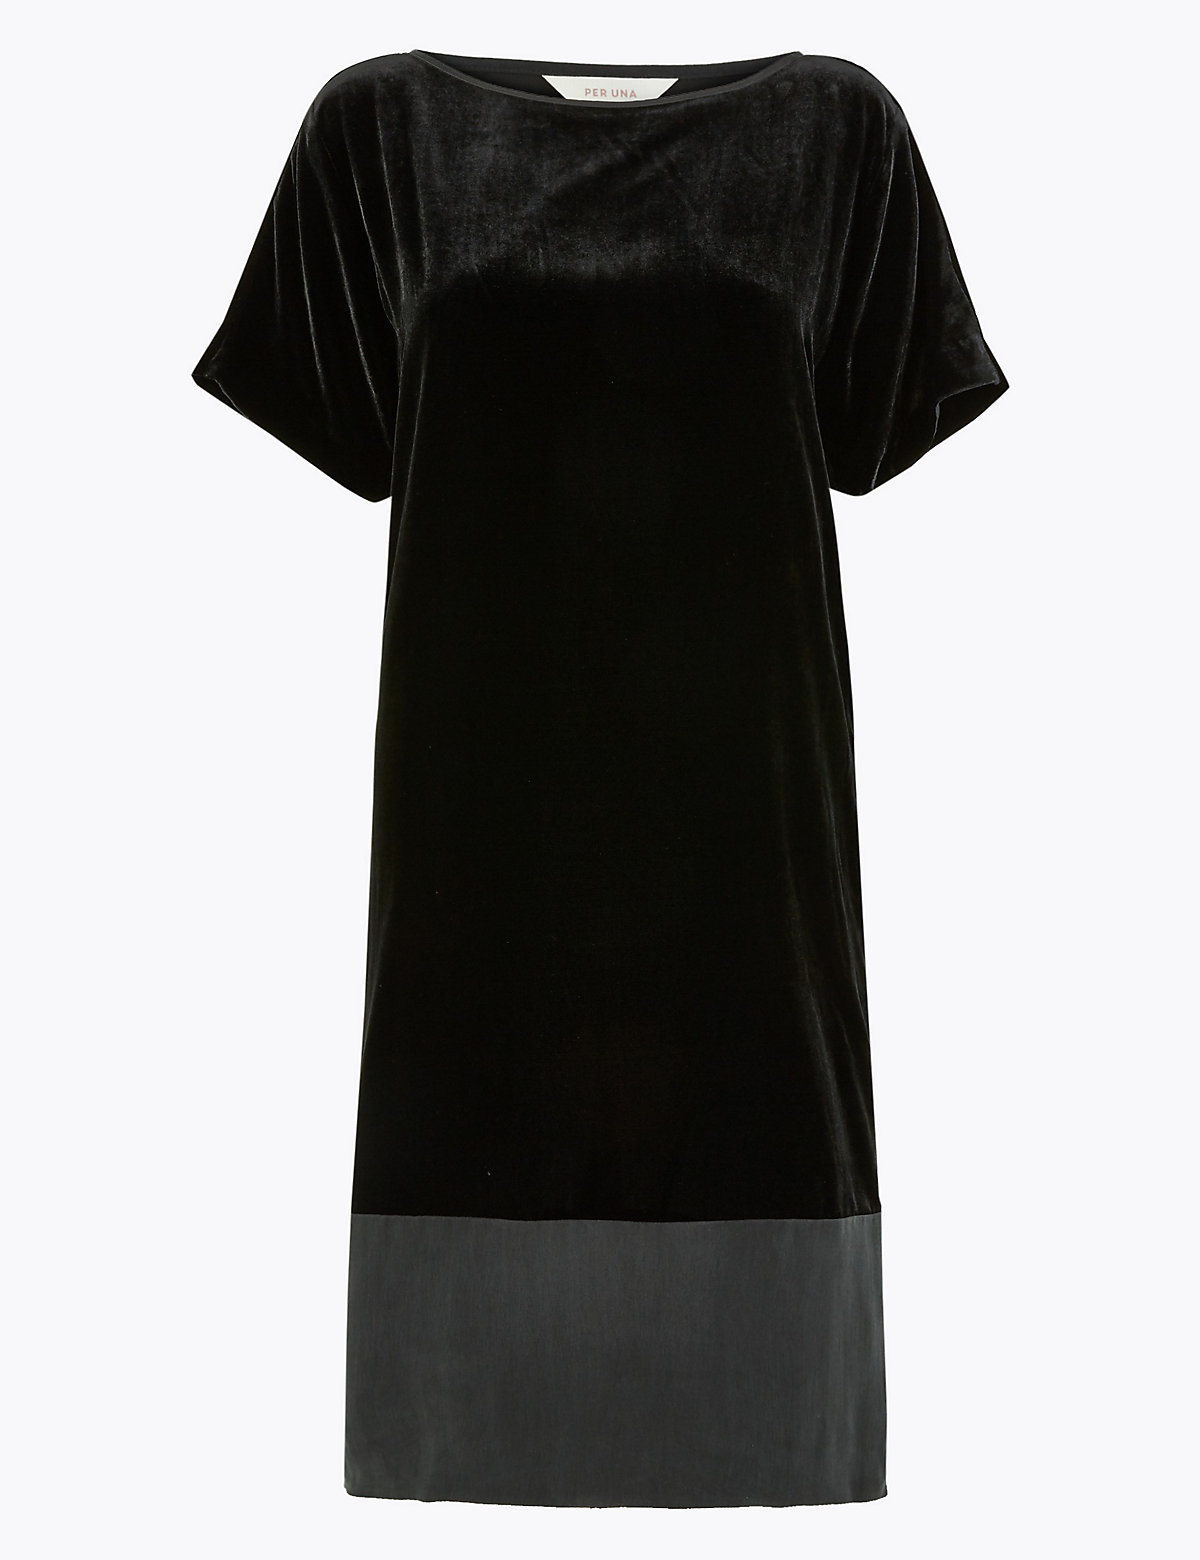 Вельветовое прямое платье-футболка с коротким рукавом Per Una. Цвет: черный